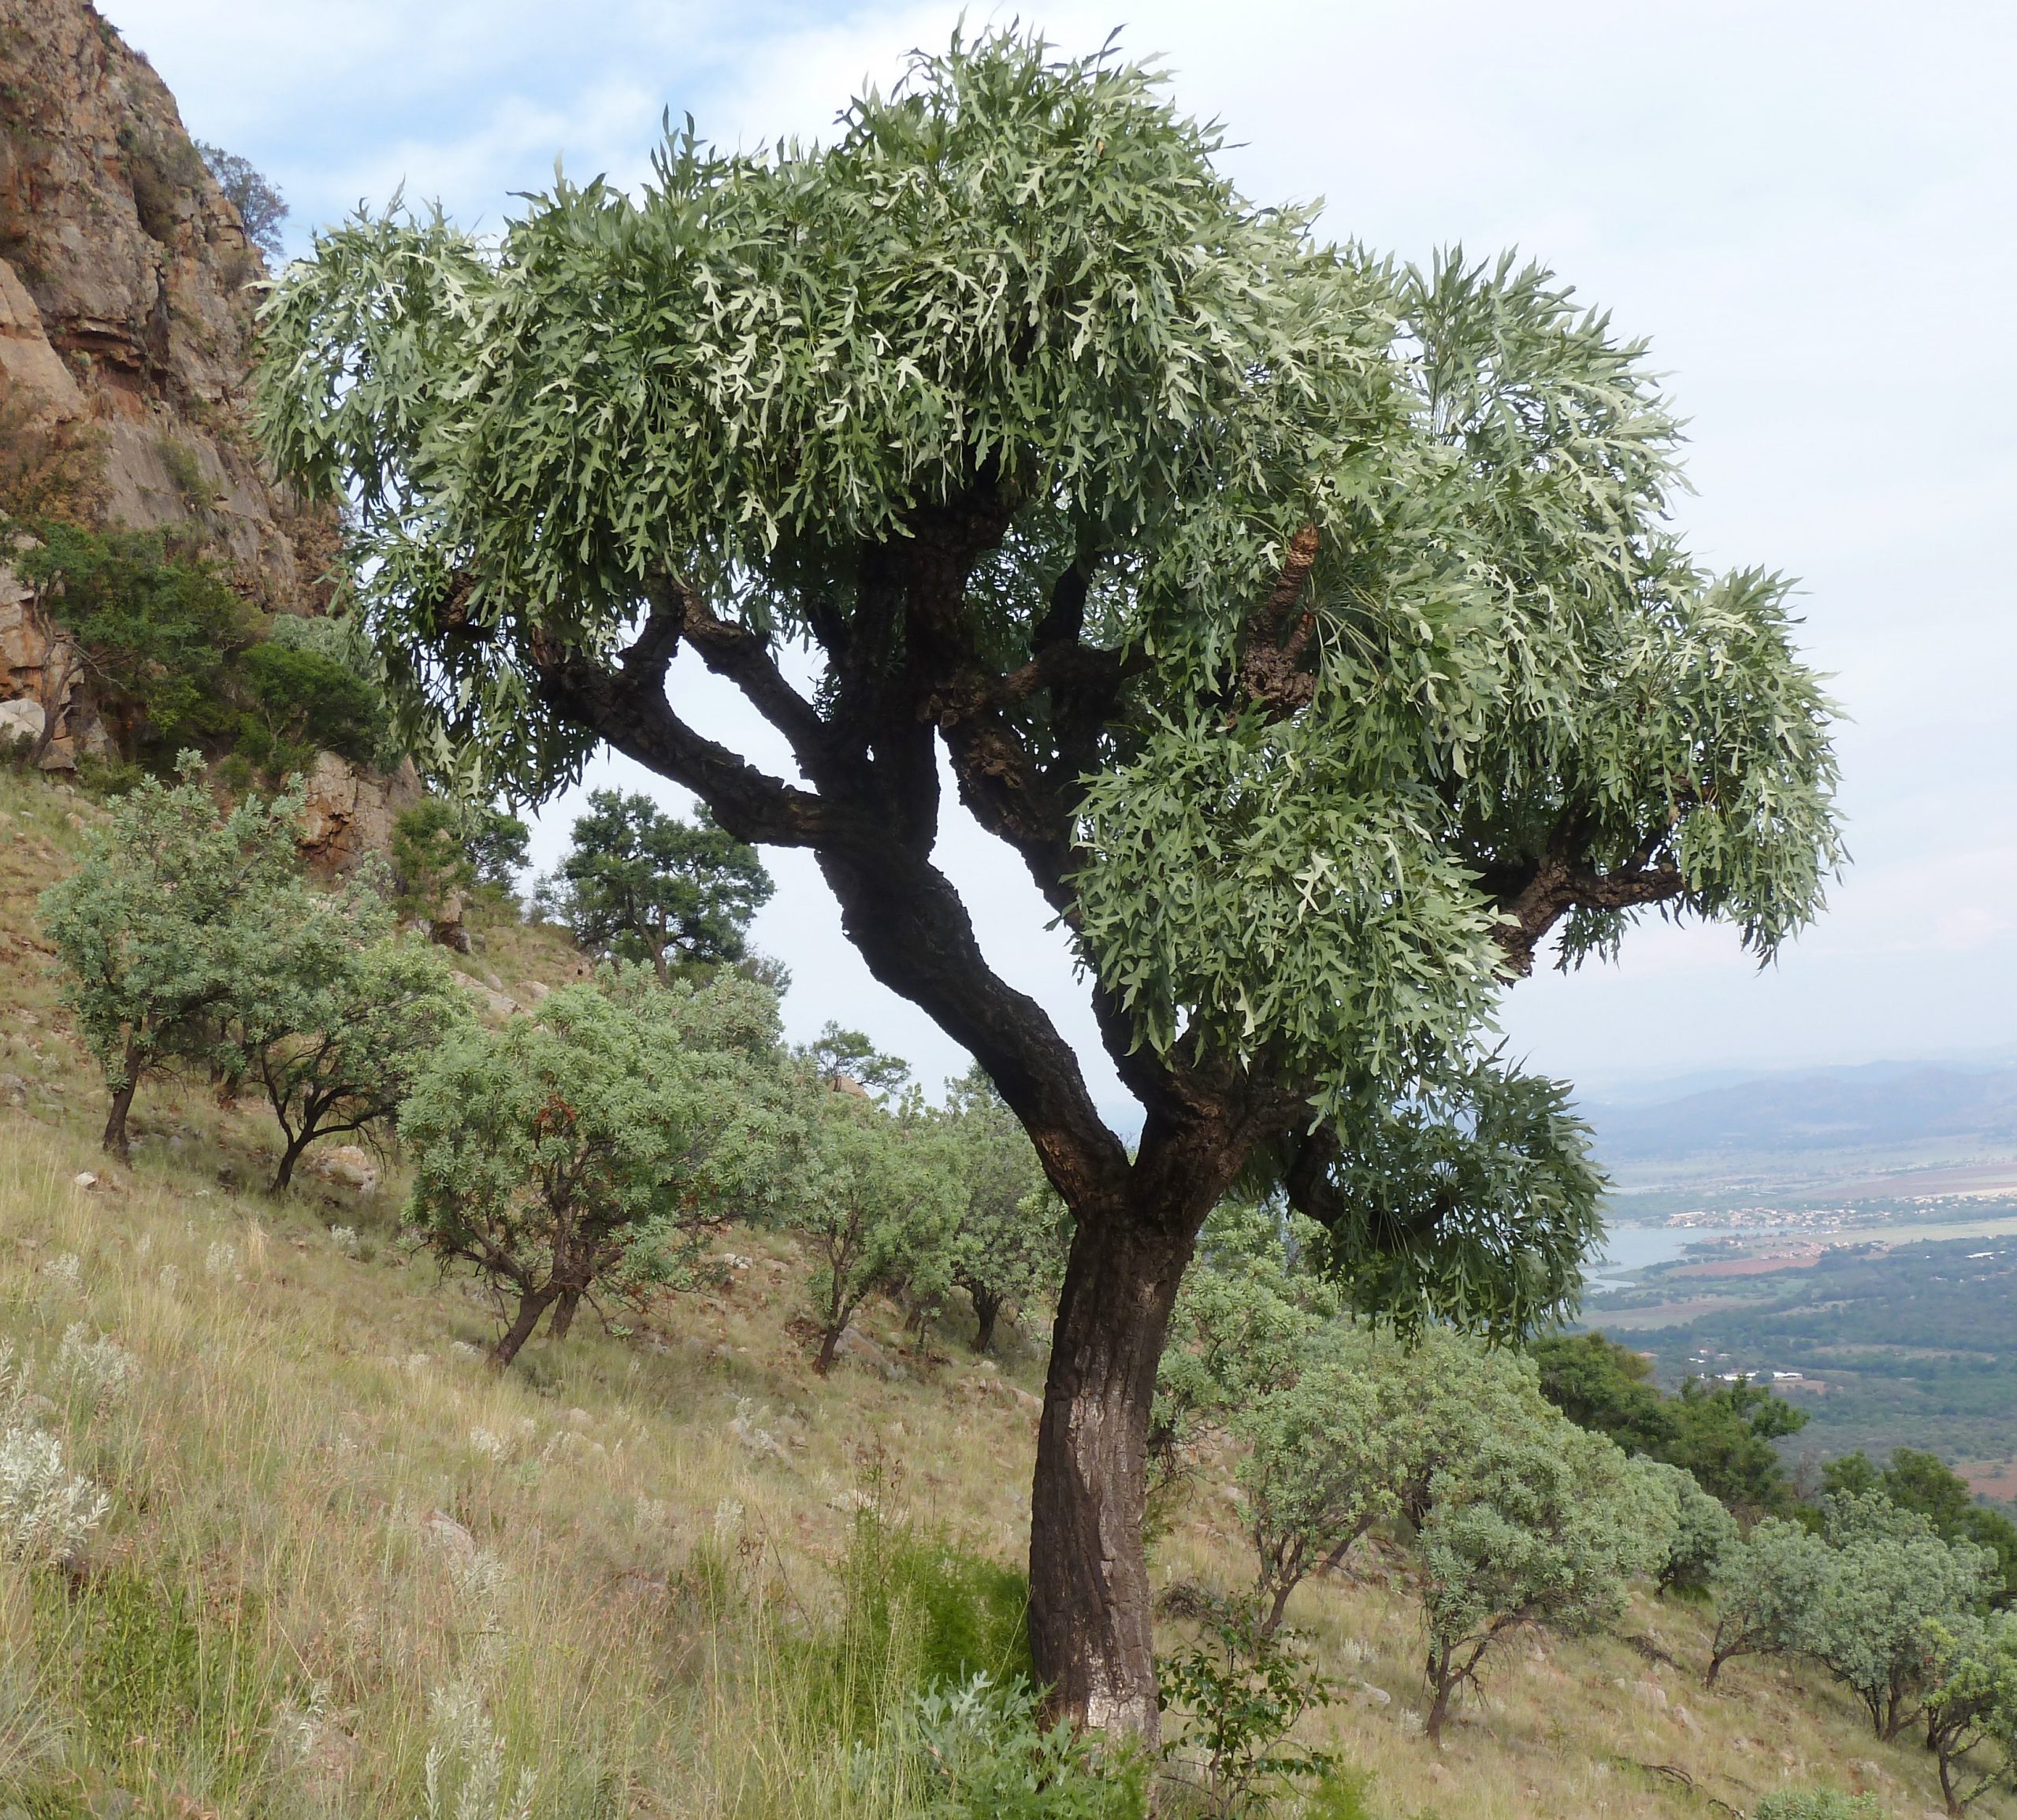 Cussonia paniculata en hábitat, una de las Araliaceae más resistentes a la sequía.